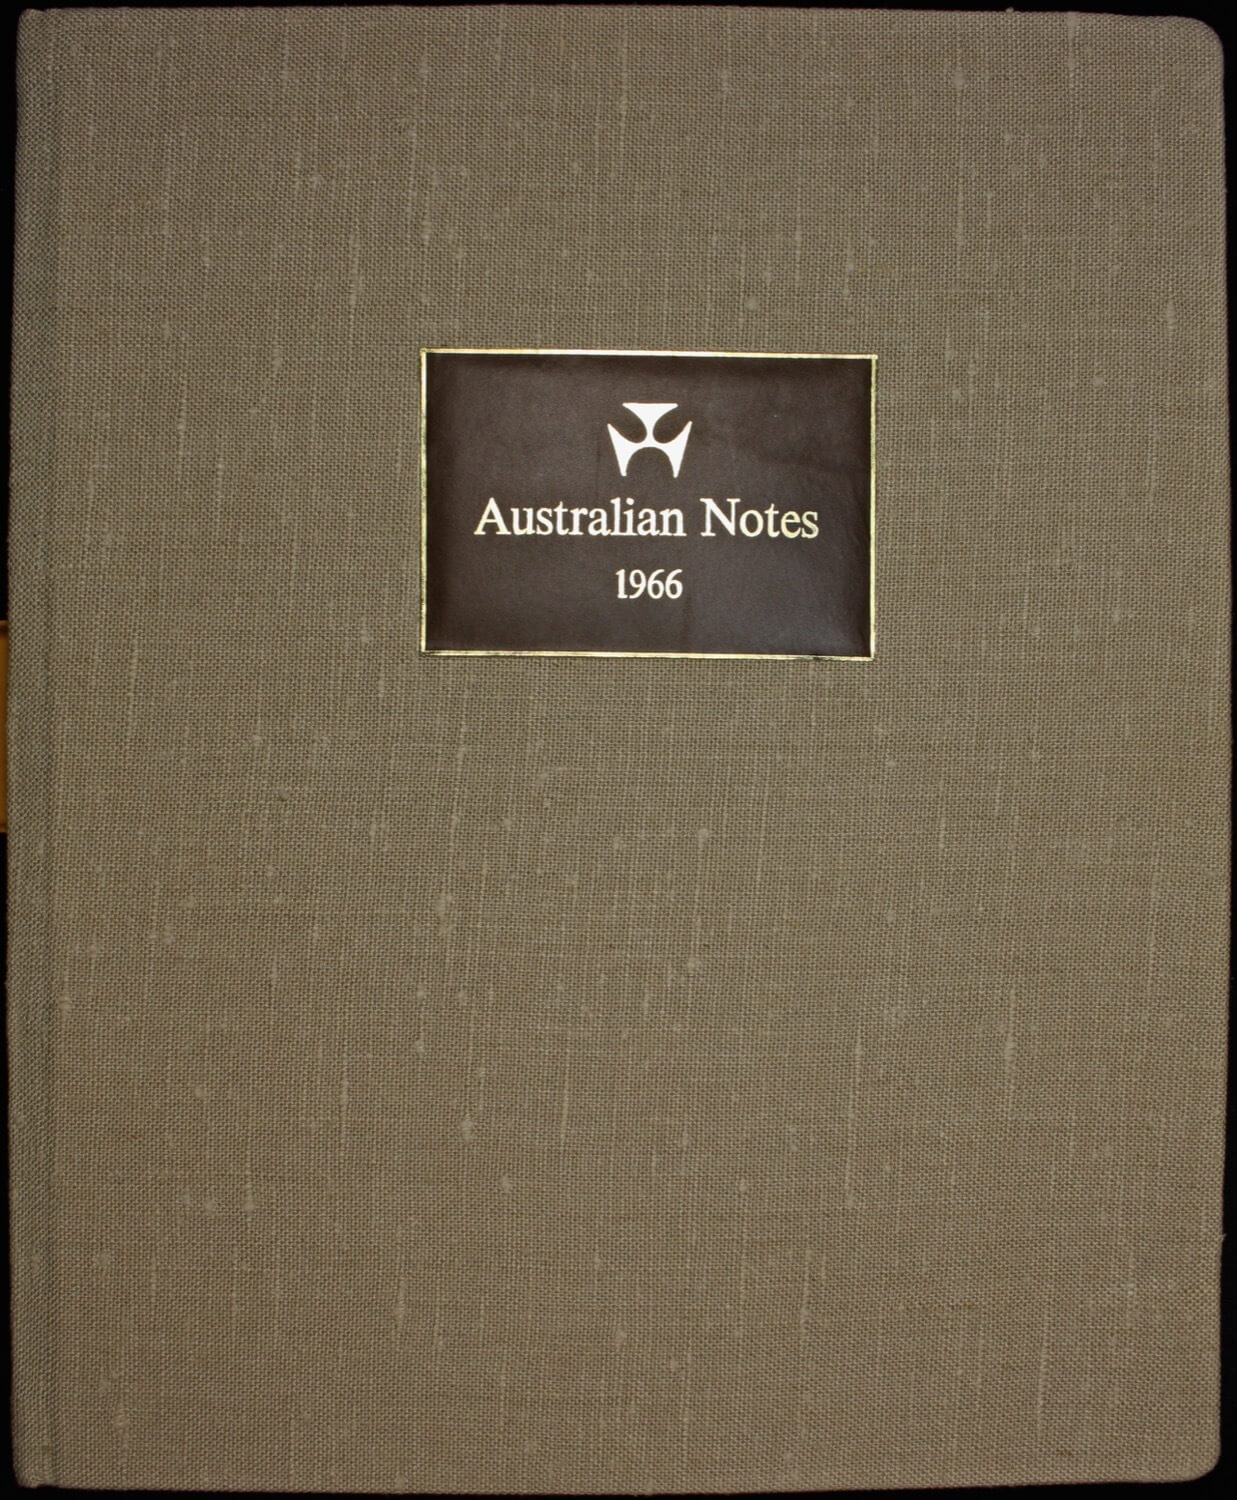 Australia 1966 Complete Type I Specimen Banknote Set In Presentation Folder (10 Notes, $1 - $20, Inc $5) product image